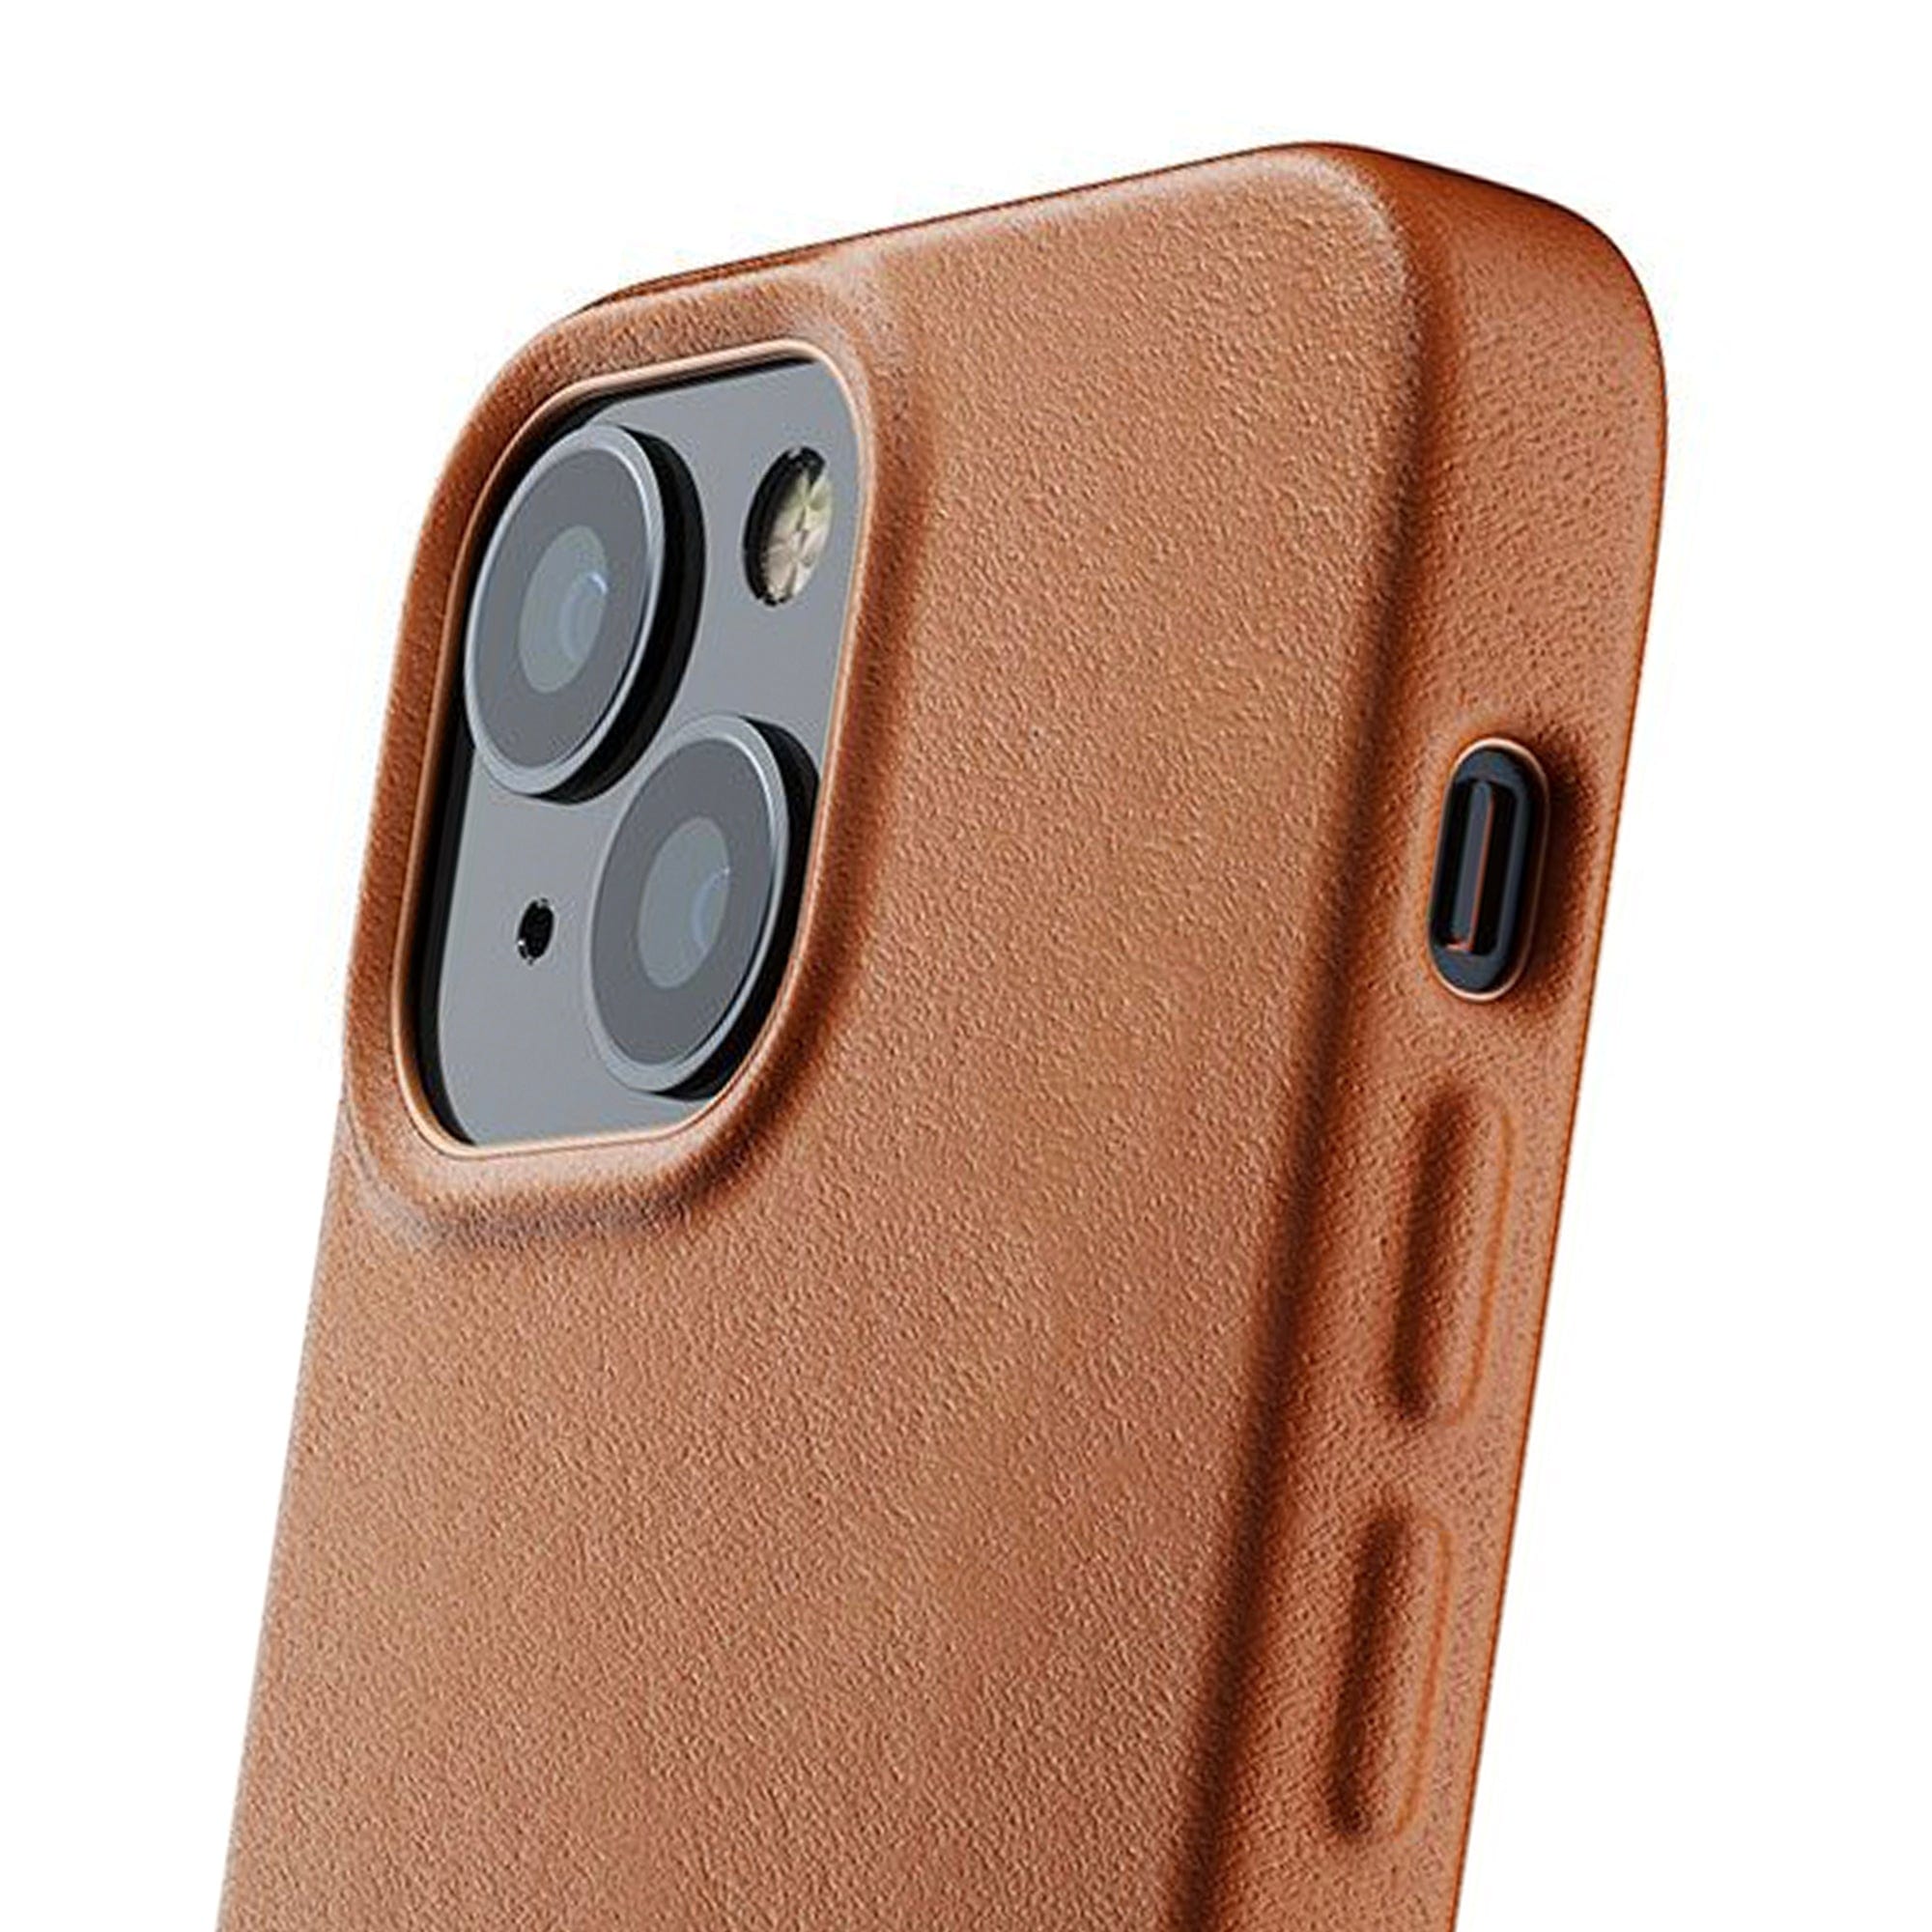 Mujjo Leather Case iPhone 13 Mini tan